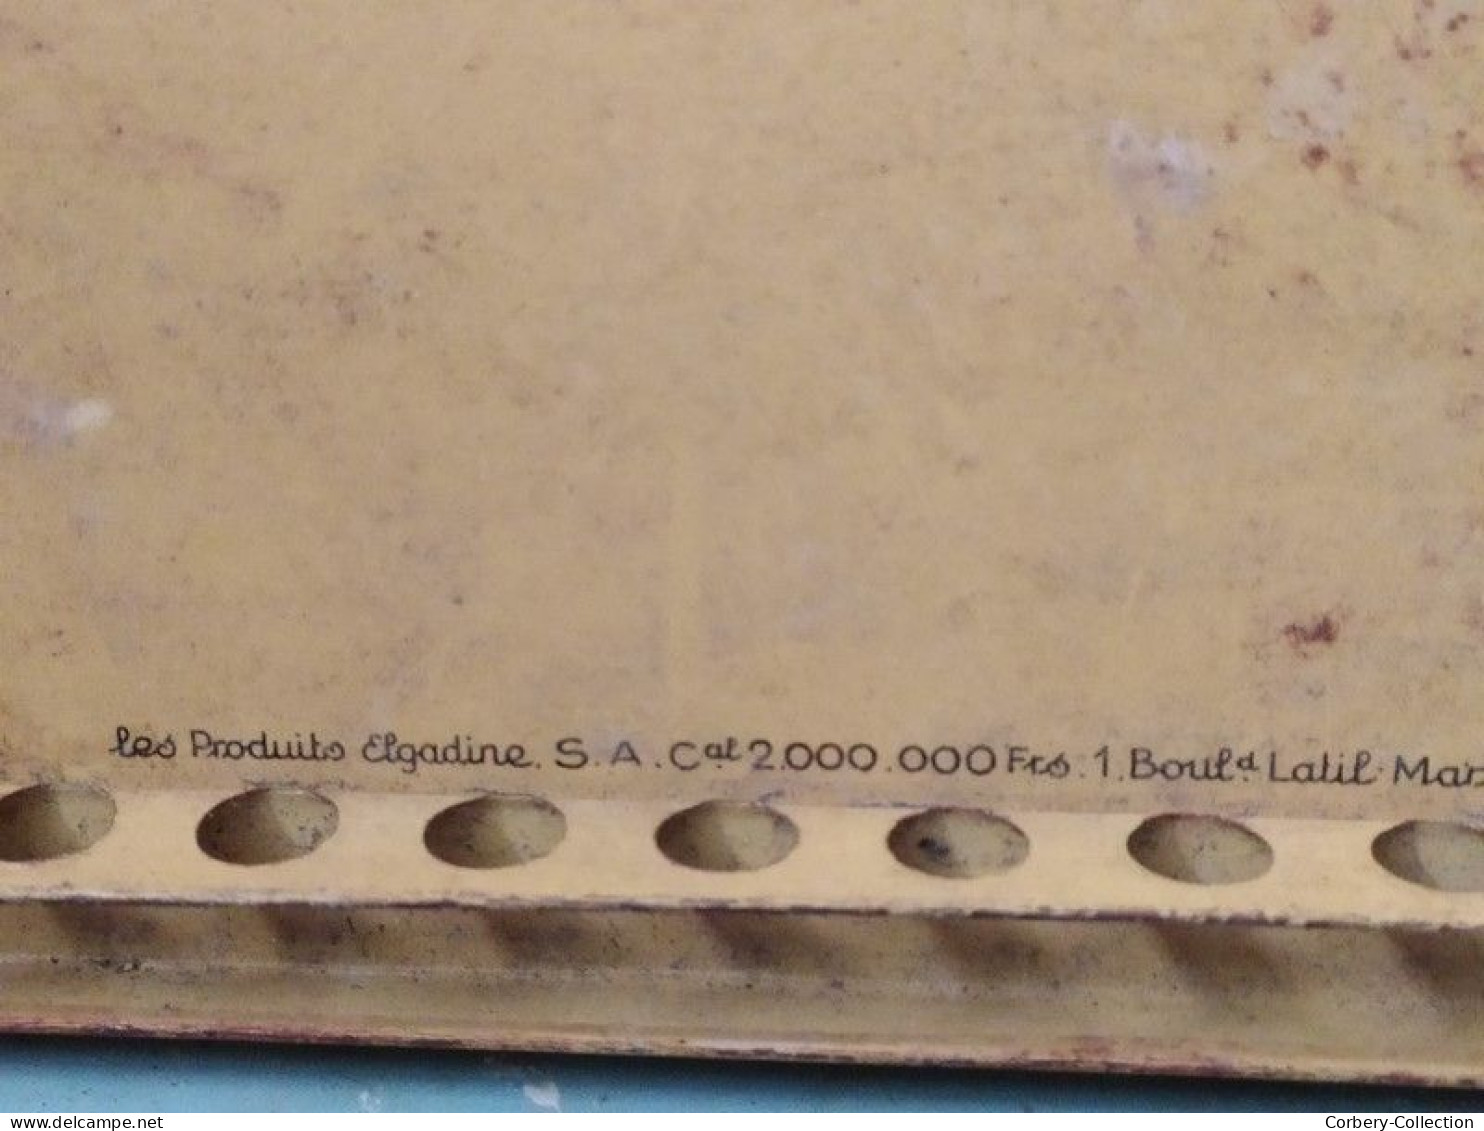 Ancien Présentoir Tôle Publicitaire Gousses de Vanille La Fée Elgadine ca1930